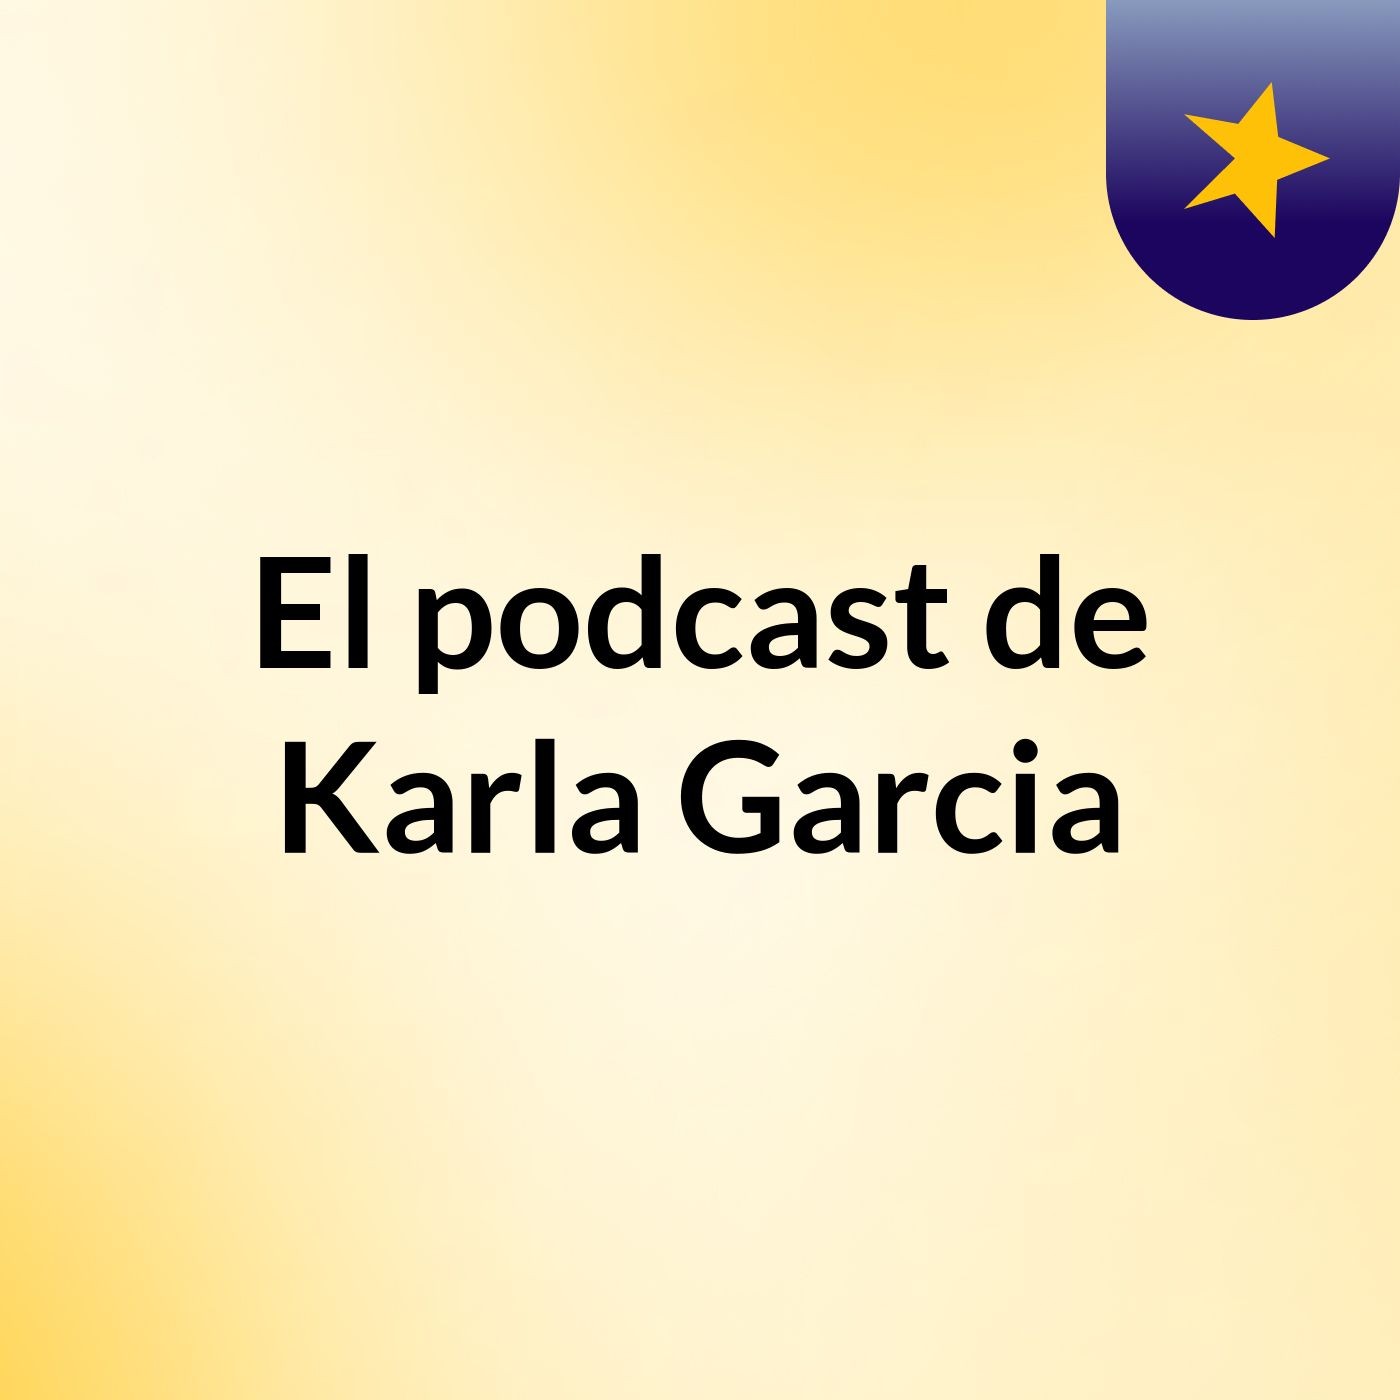 El podcast de Karla Garcia